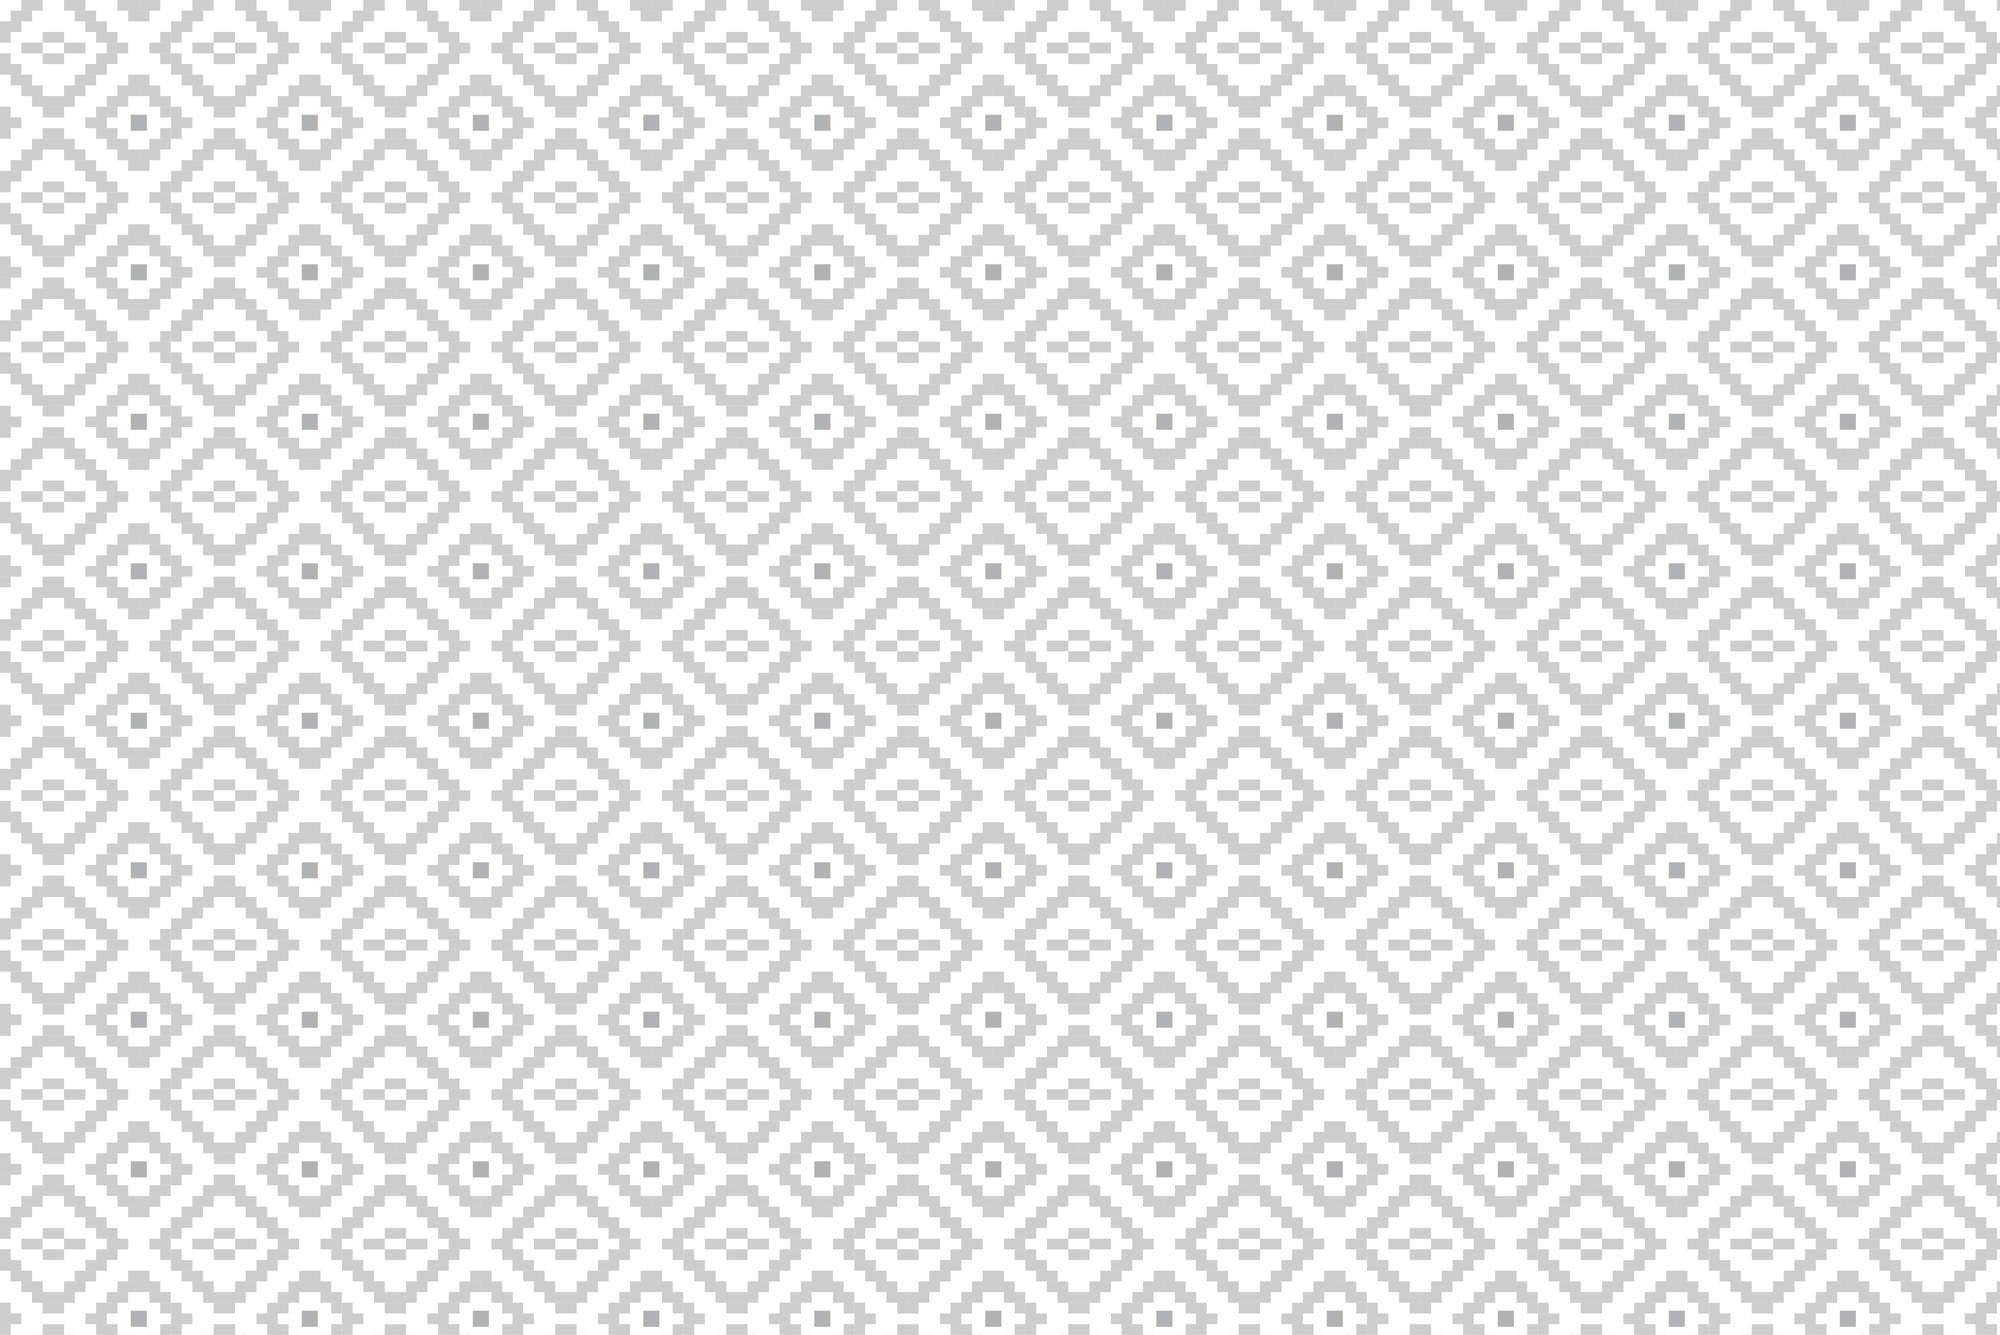             Designbehang kleine vierkantjes met patronen grijs op structuurvlies
        